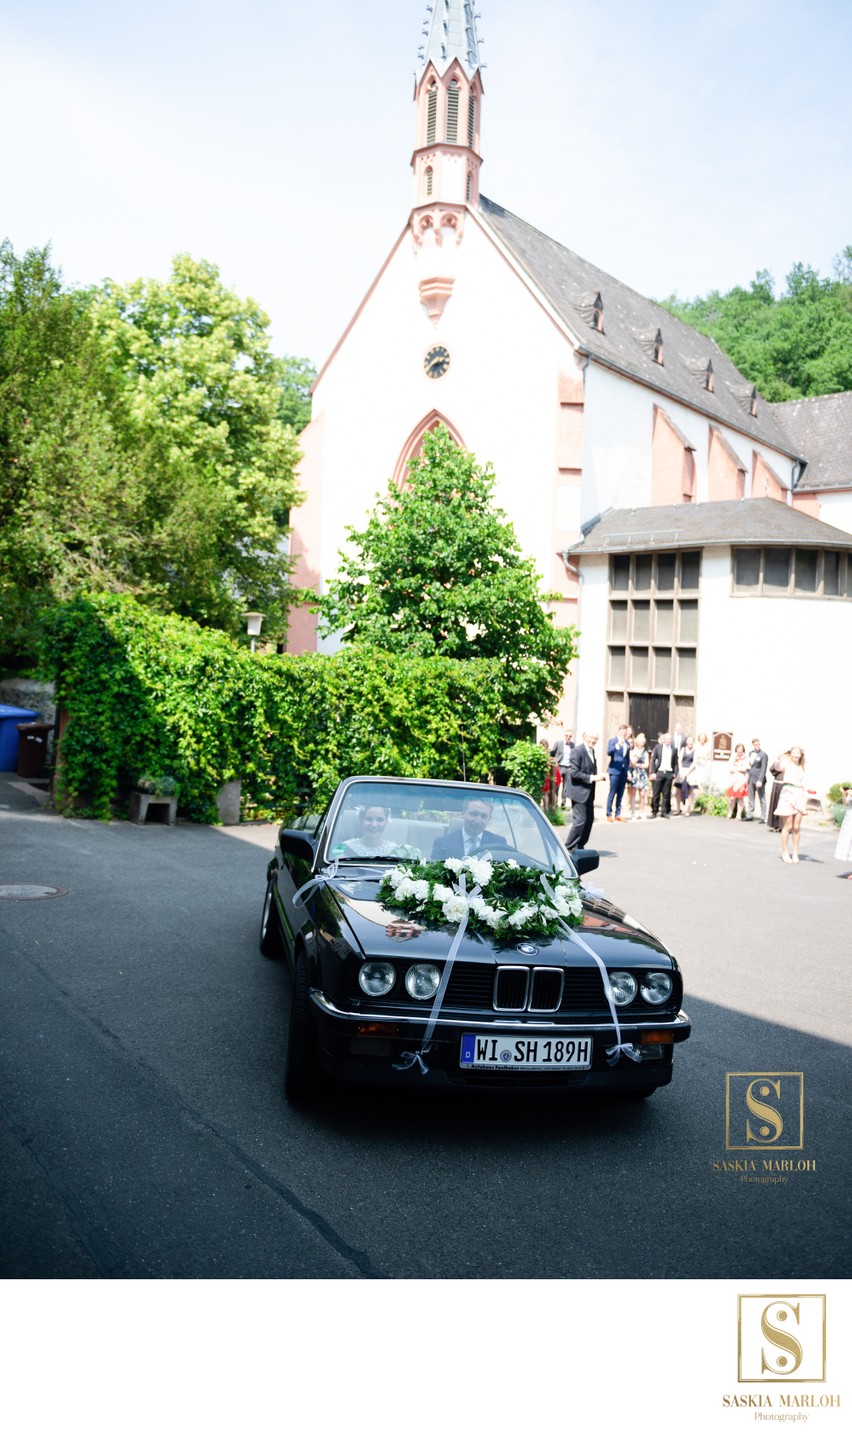 Kloster Marienthal Hochzeitsfotograf Rheingau